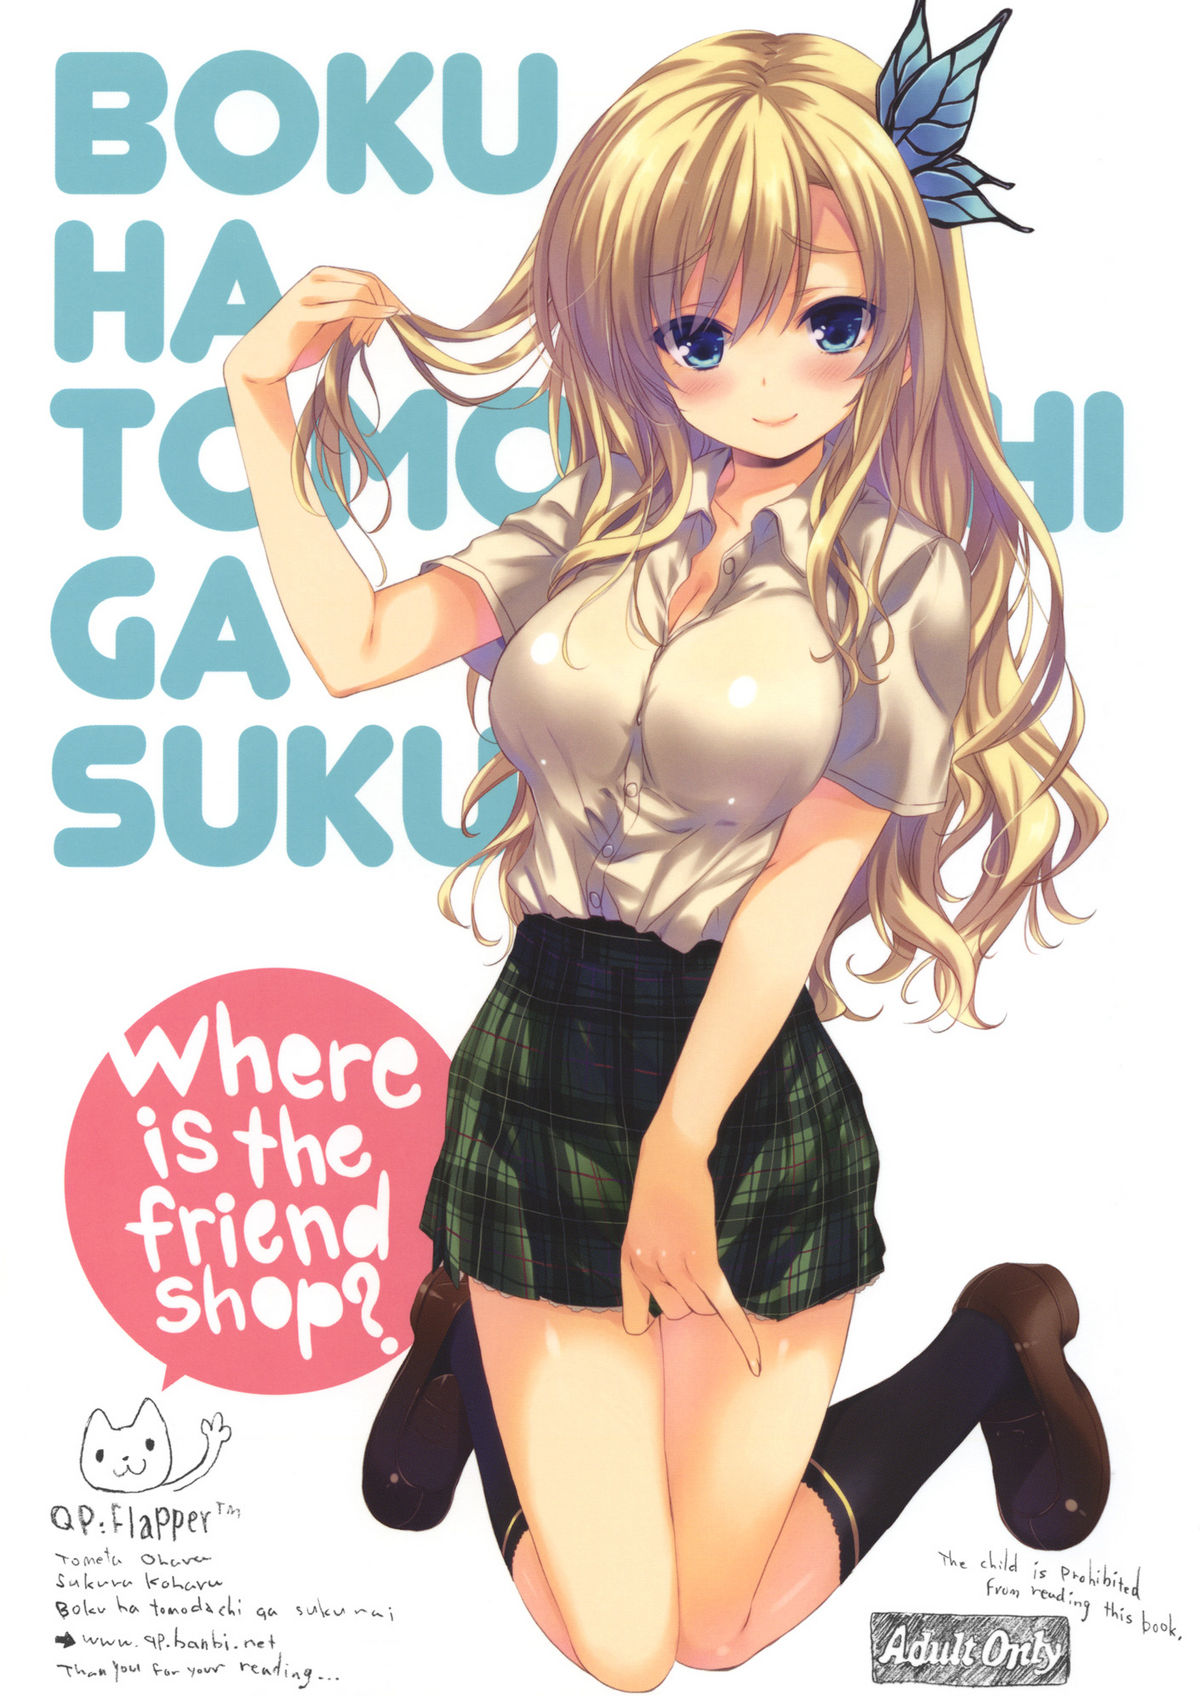 (C80) [QP:flapper (Sakura Koharu, Ohara Tometa)] Where is the Friend shop? (Boku wa Tomodachi ga Sukunai) page 1 full